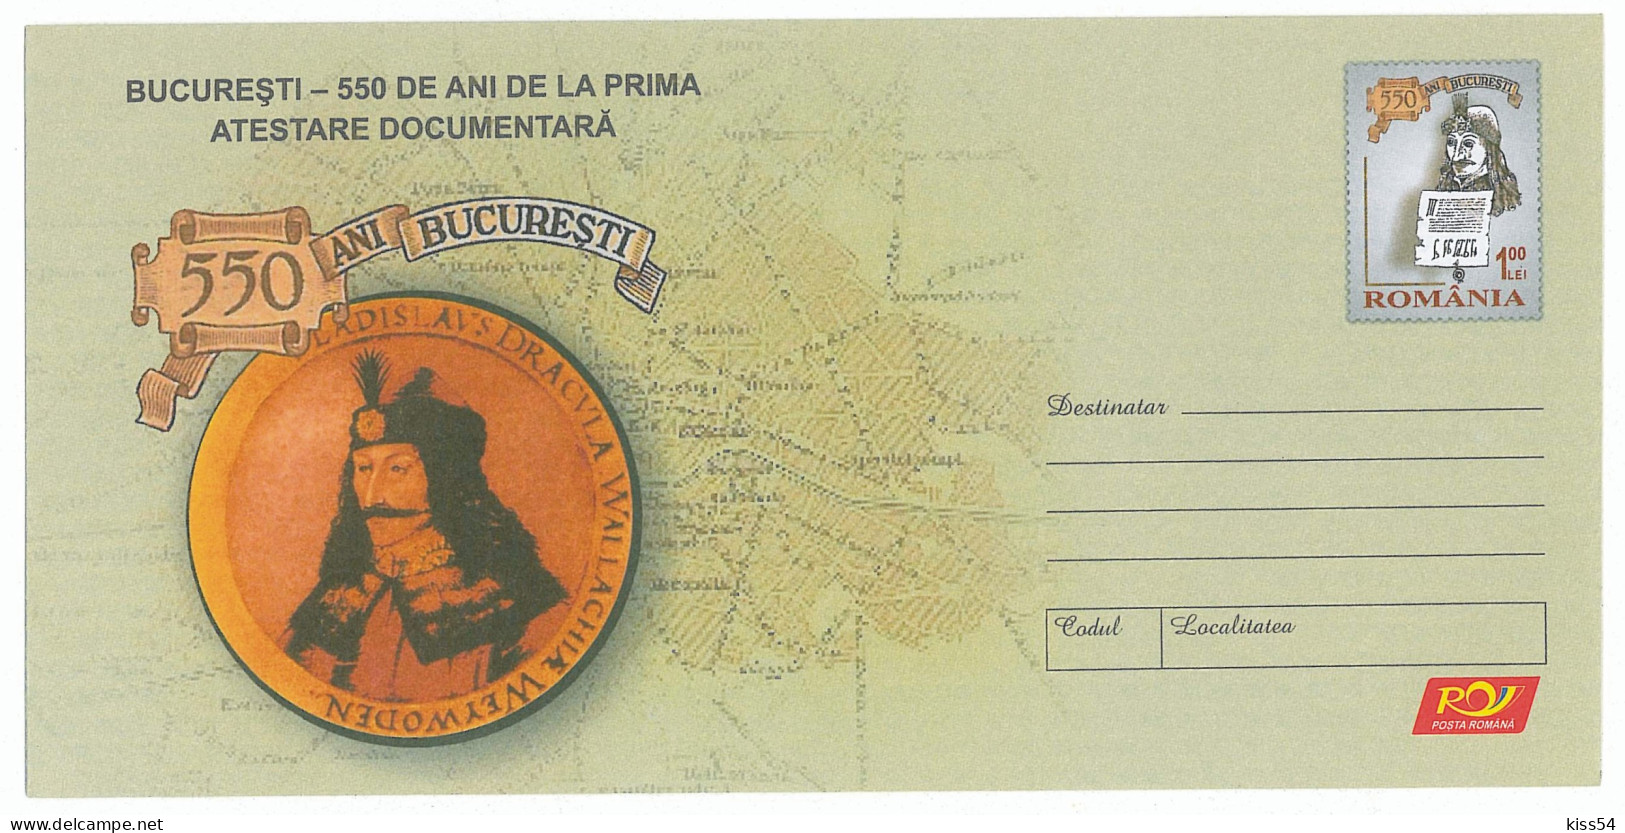 IP 2009 - 43 Bucuresti, DRACULA, Romania - Stationery - Unused - 2009 - Postal Stationery